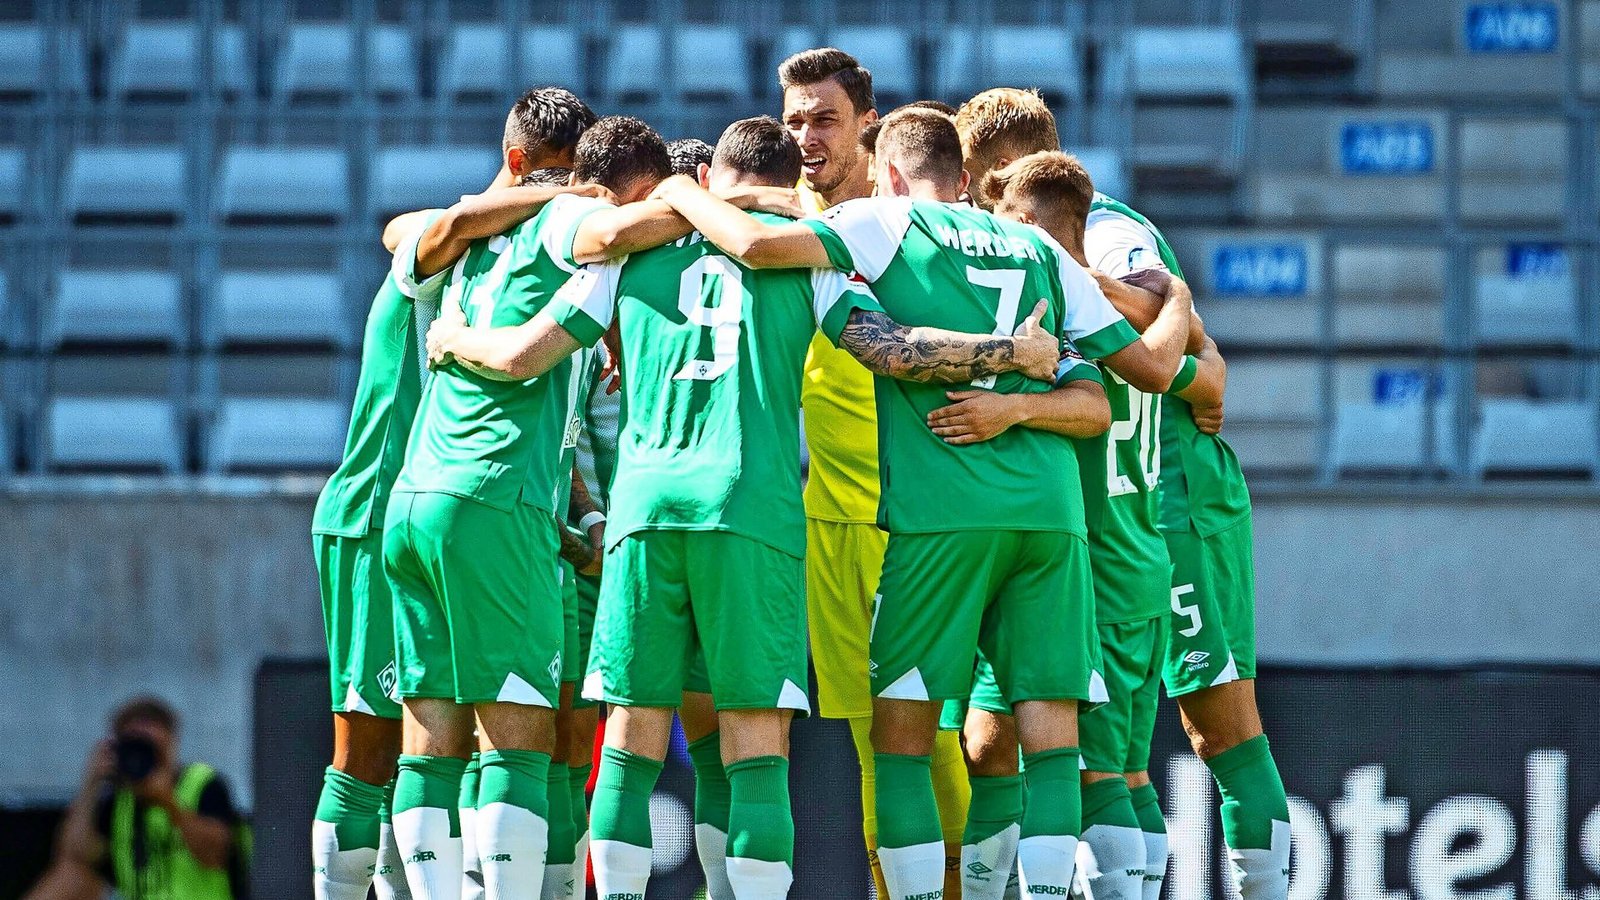 Das Team von Werder Bremen hat den sofortigen Wiederaufstieg geschafft und will sich nun wieder in der Bundesliga etablieren.Foto: IMAGO//ch